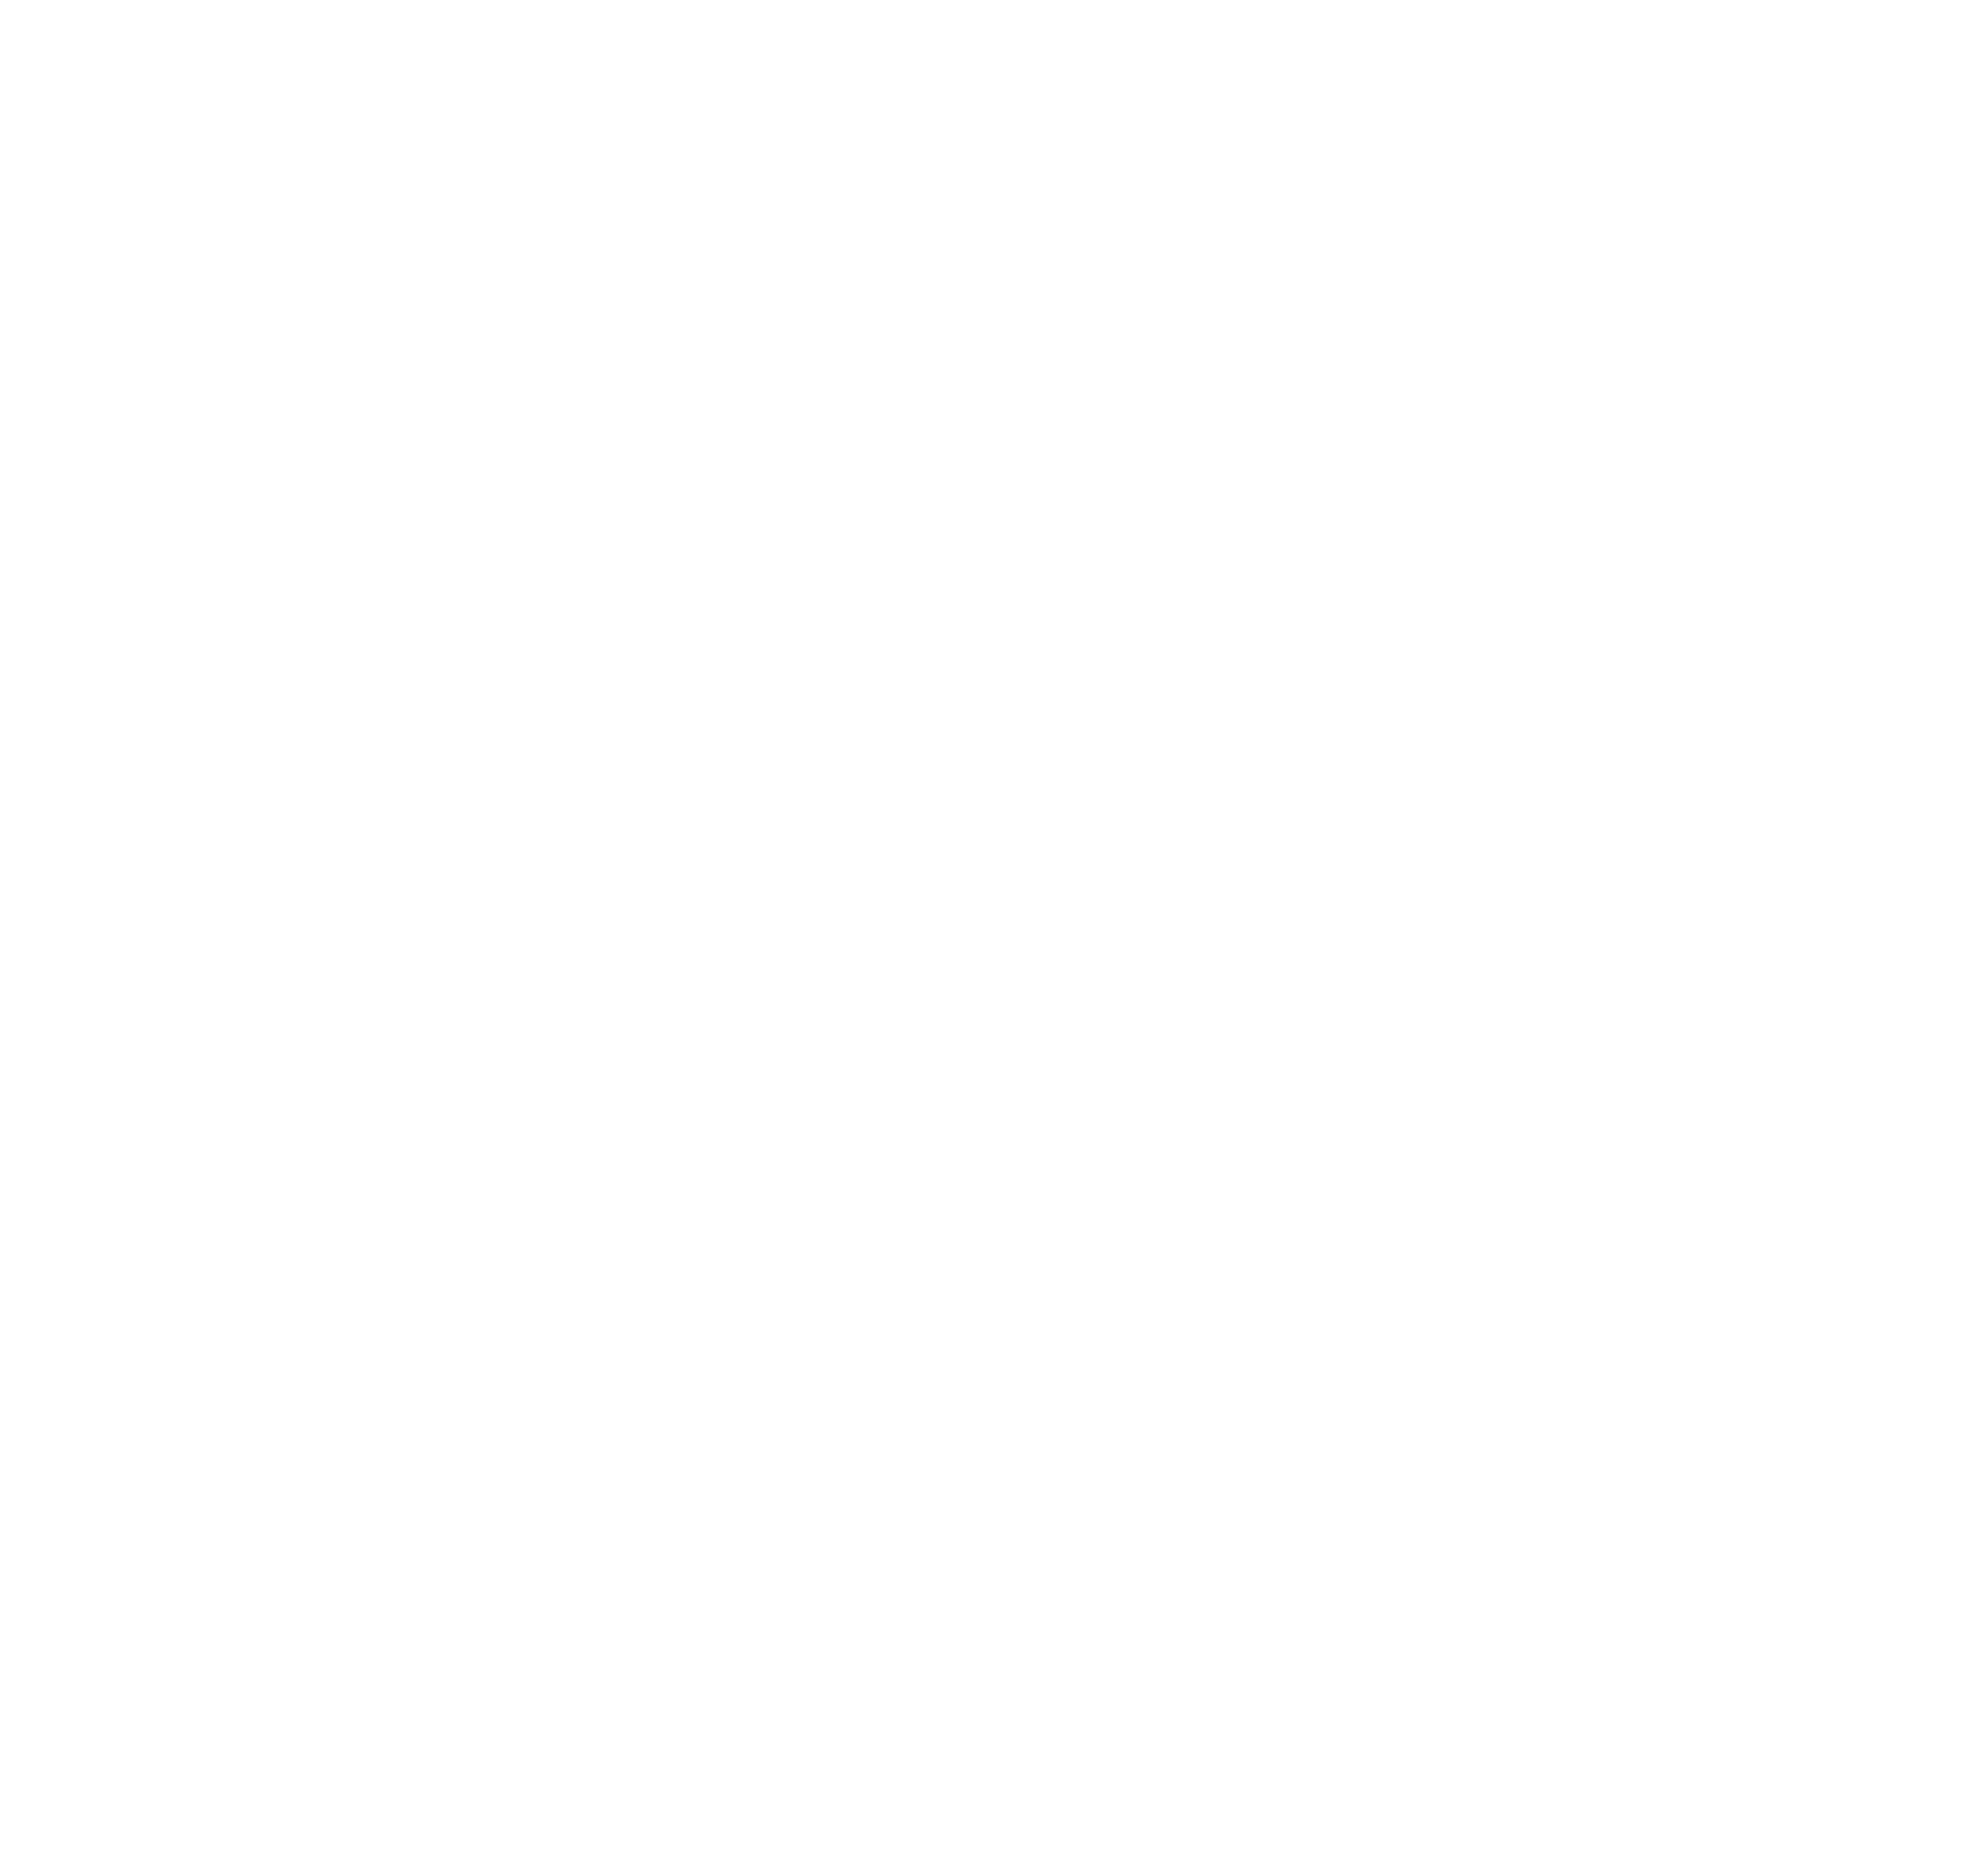 STH Hollabrunn